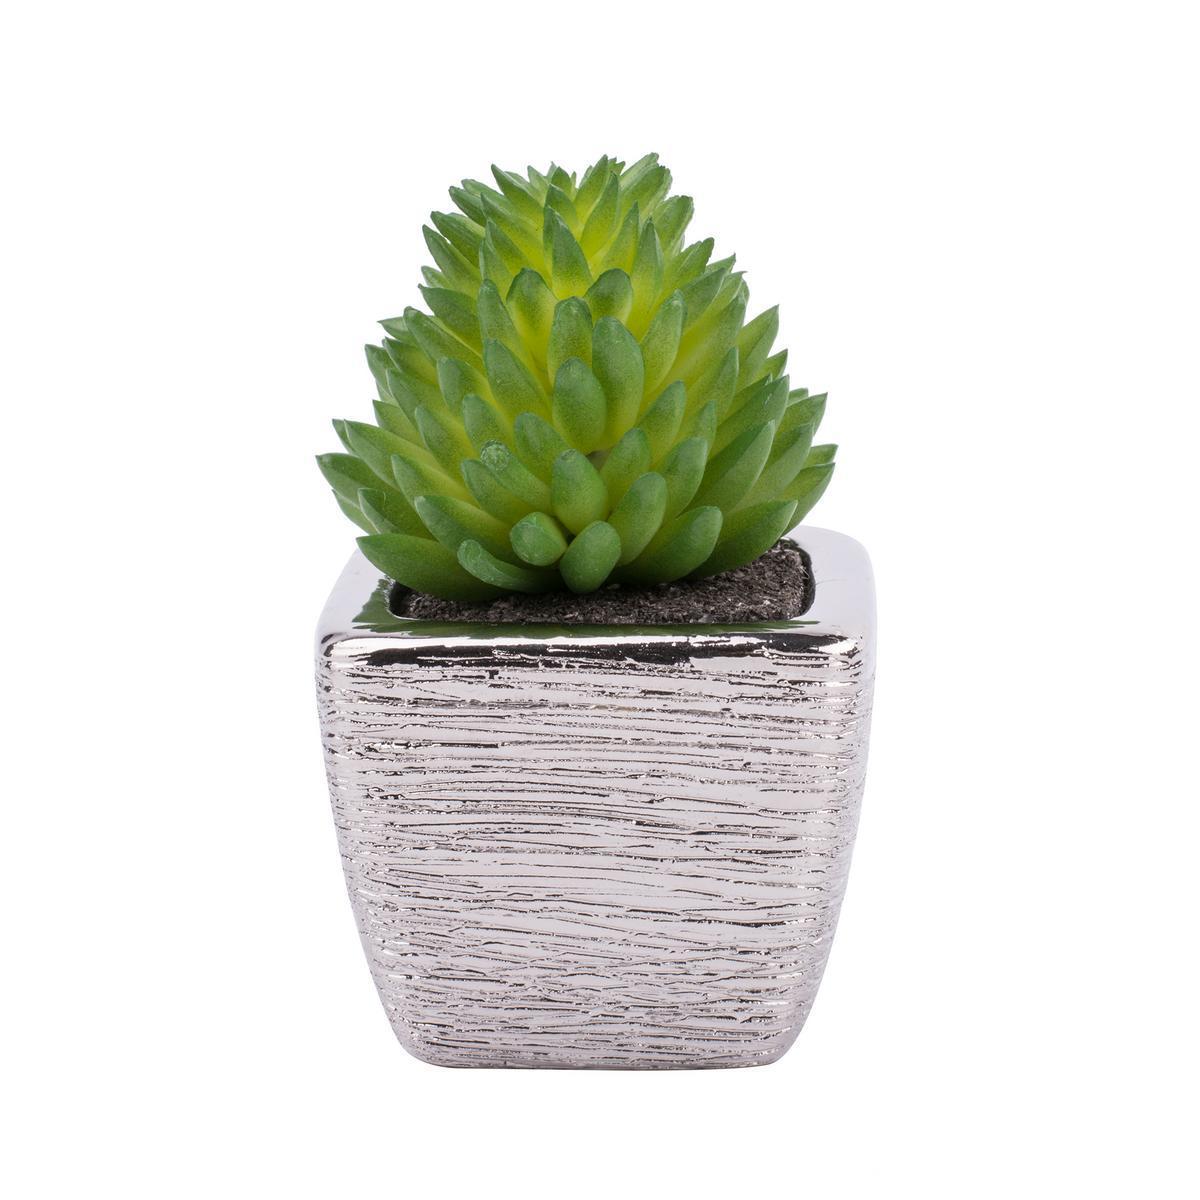 Plante grasse artificielle en pot - Plastique et céramique - 5 x 5 x H 8 cm - Vert et gris